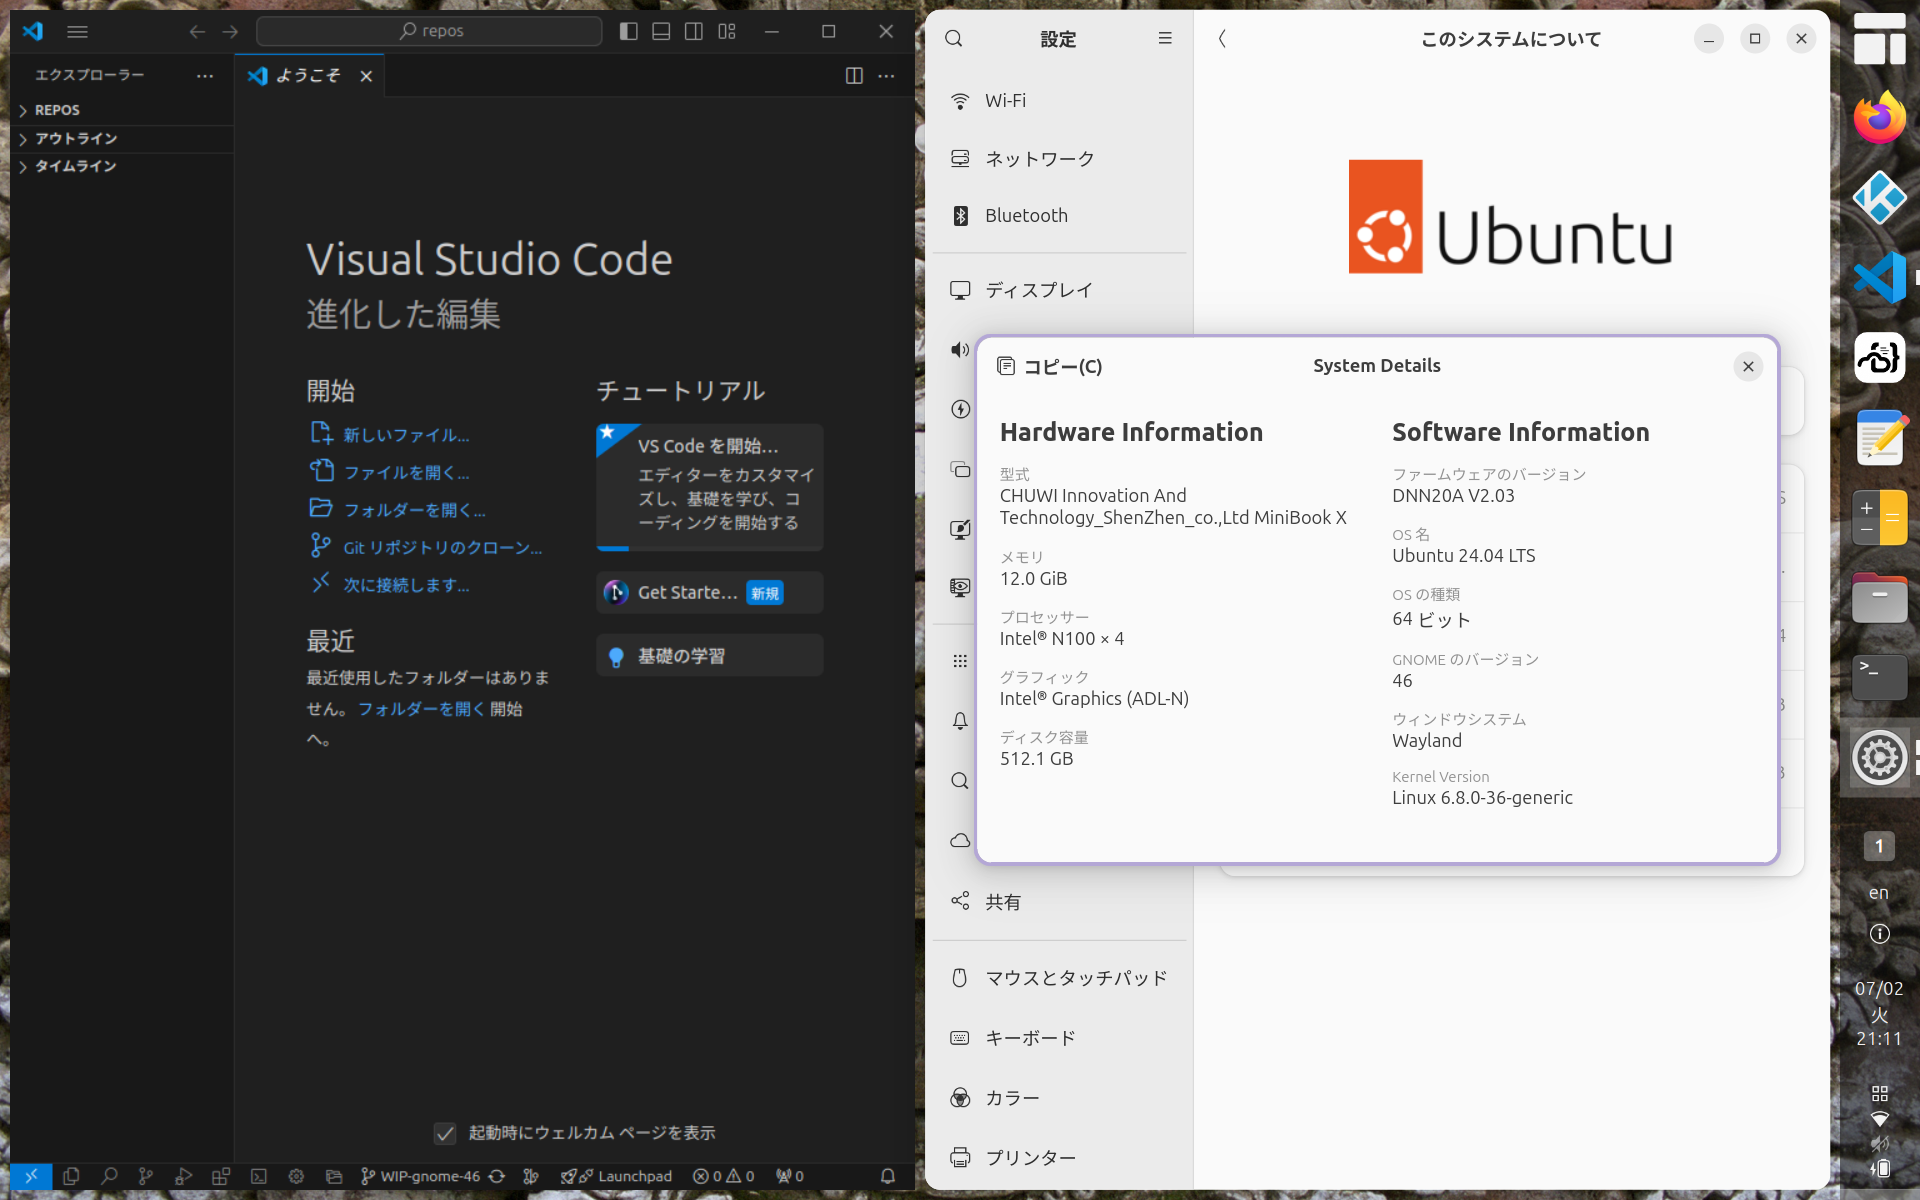 Minibook X + Ubuntu 24.04 LTS